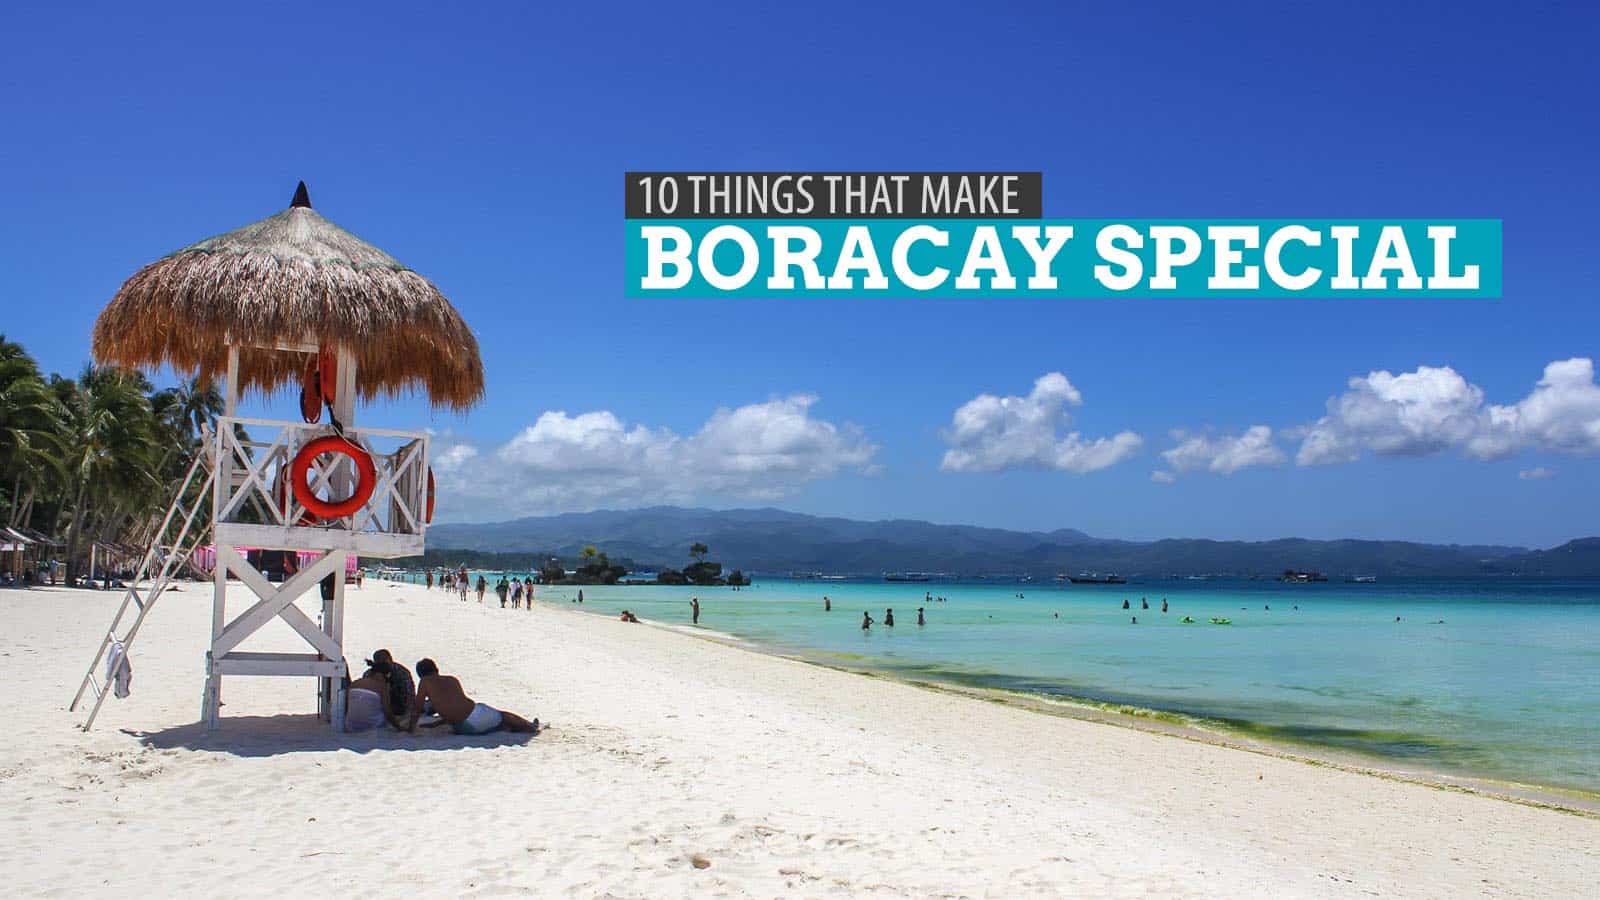 让长滩岛变得特别的10件事:菲律宾的阿克兰